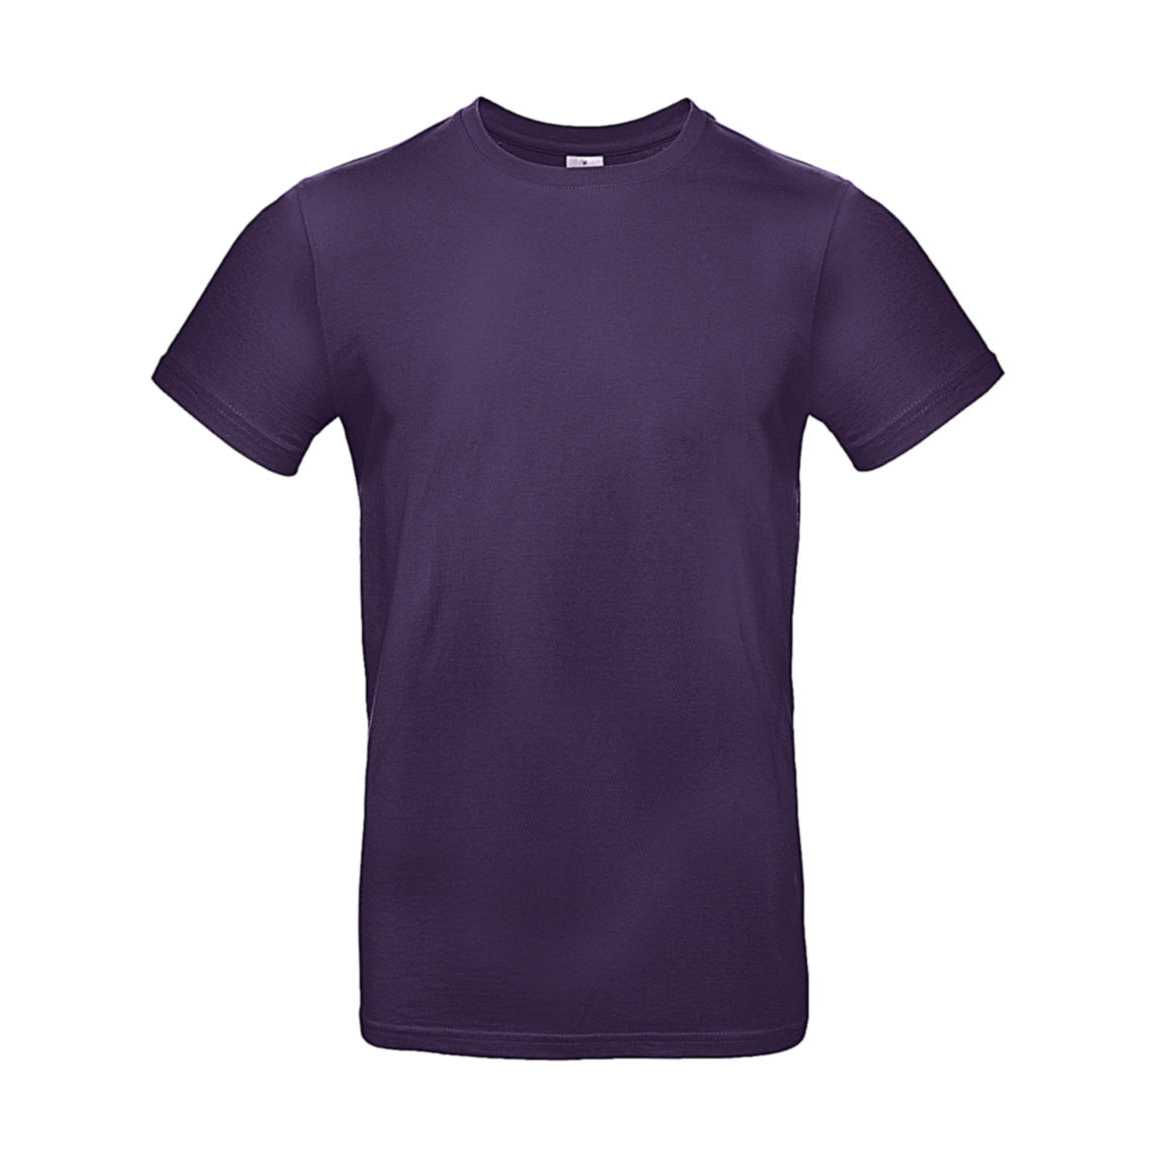 Triko pánské B&C E190 T-Shirt - tmavě fialové, L